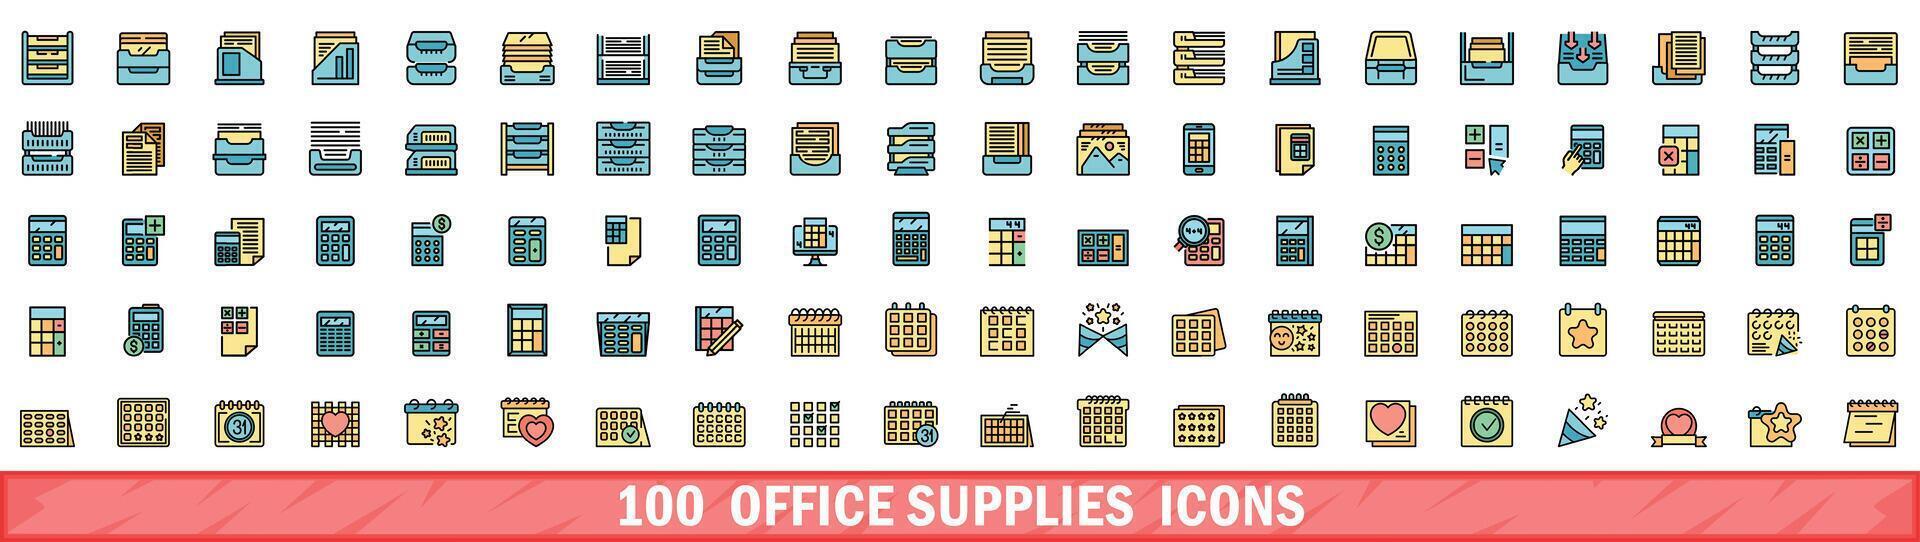 100 kantoor benodigdheden pictogrammen set, kleur lijn stijl vector